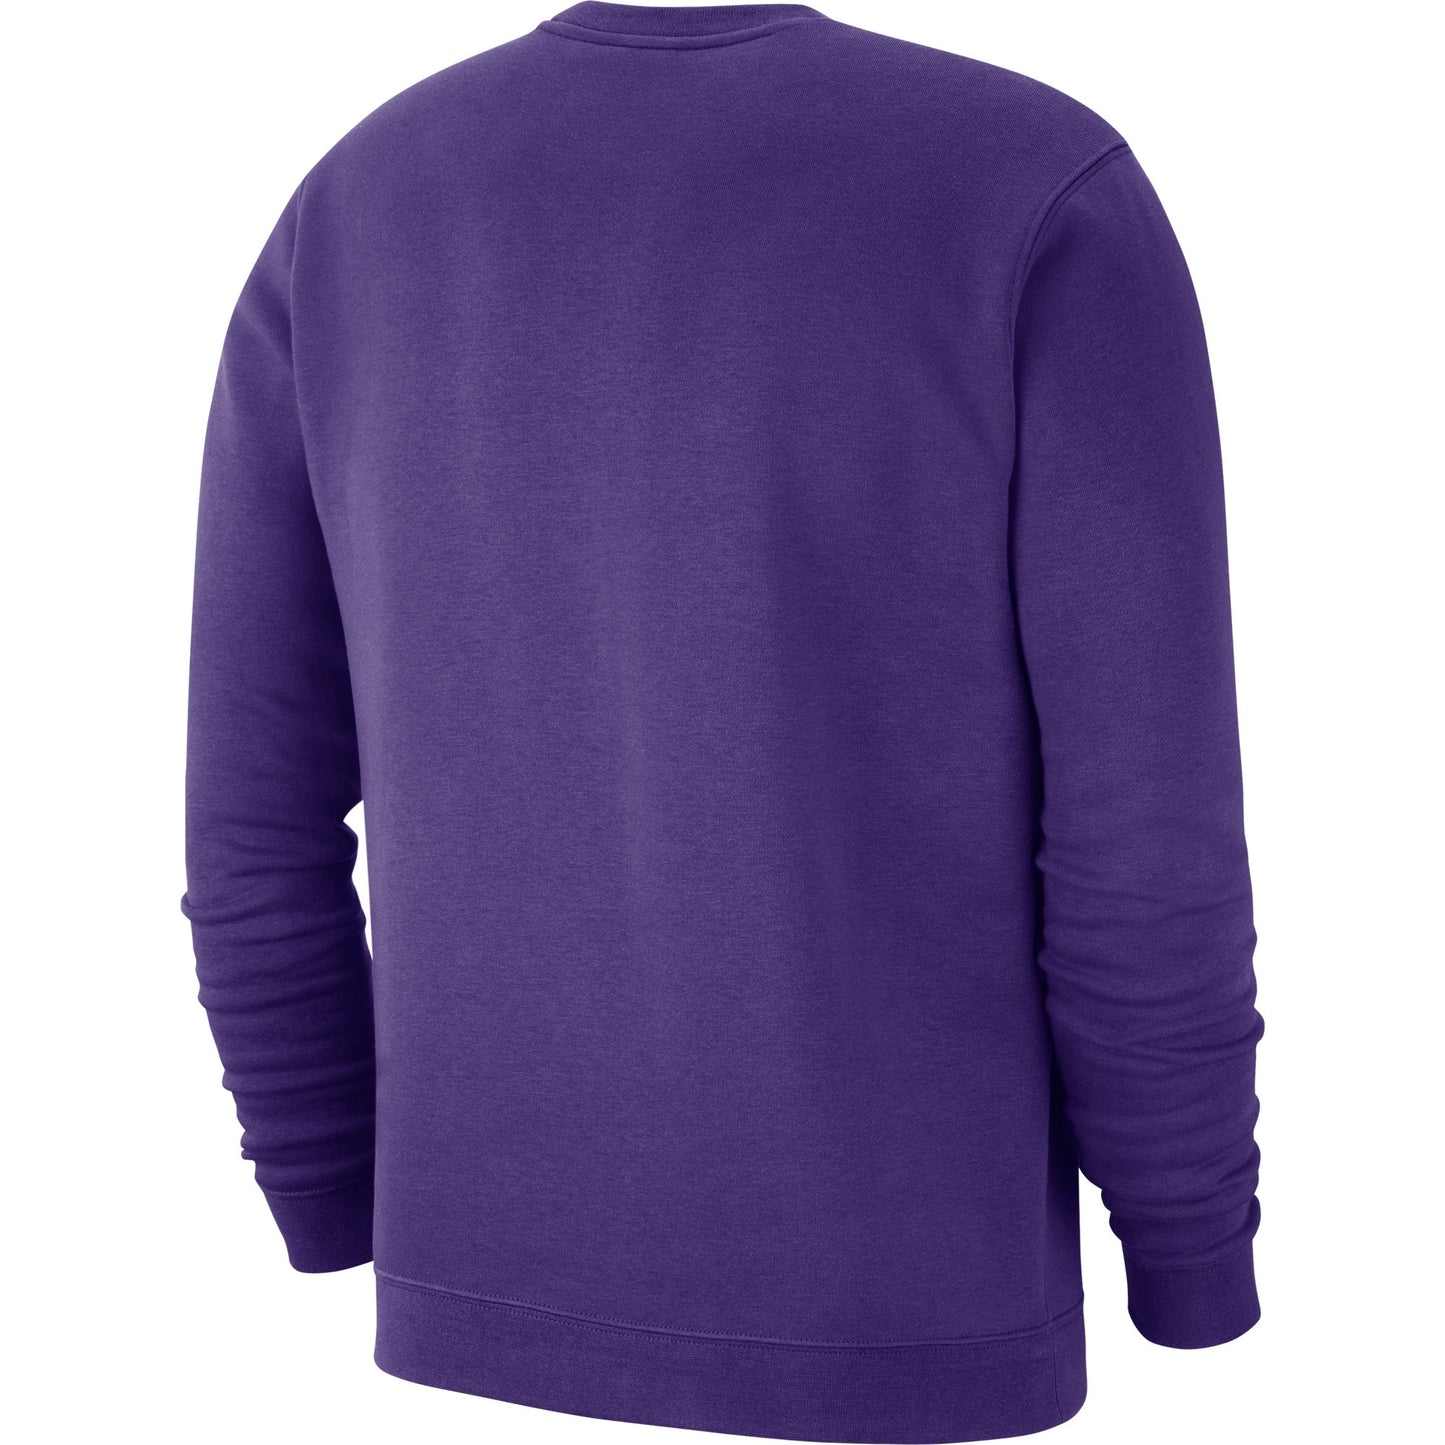 Men's LSU Tigers NIKE Purple College Club Fleece Crew Neck Sweatshirt